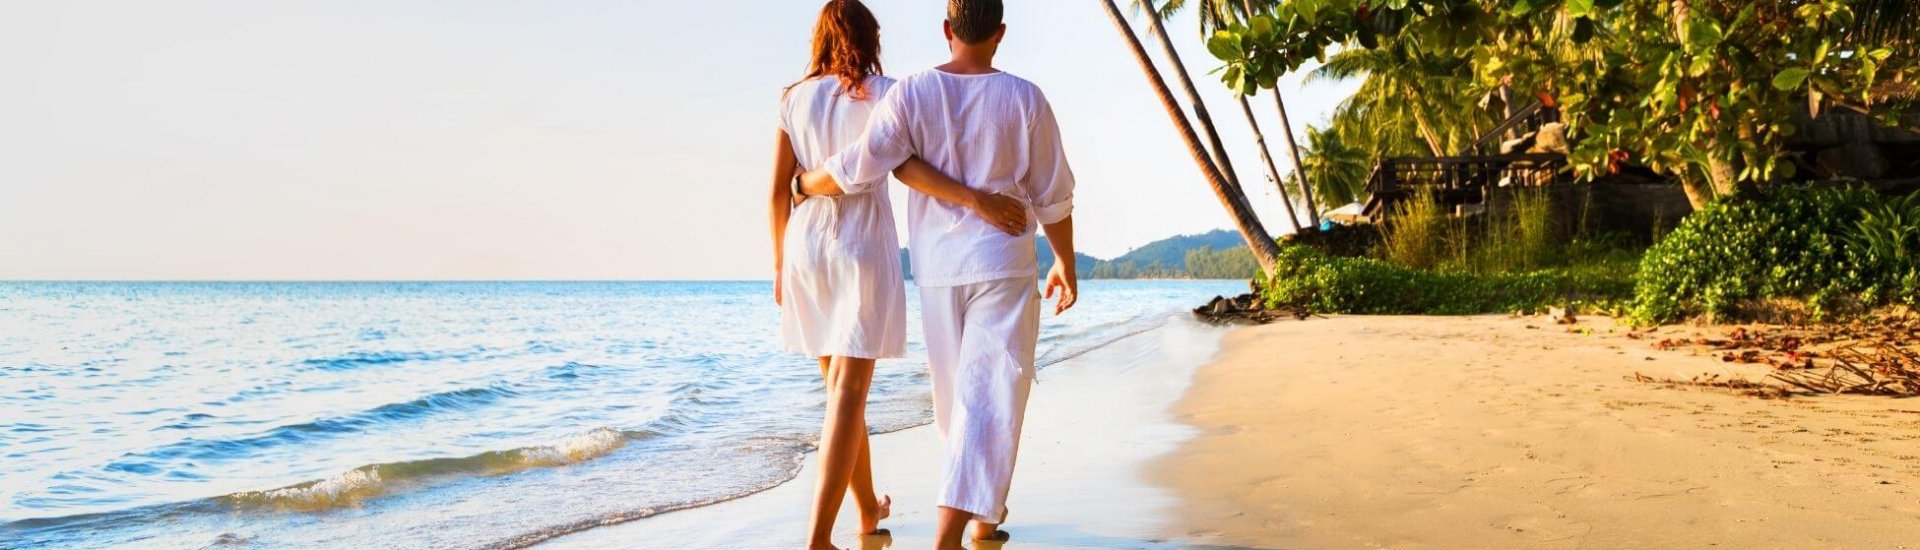 honeymoon couple enjoying a stroll on a caribbean beach